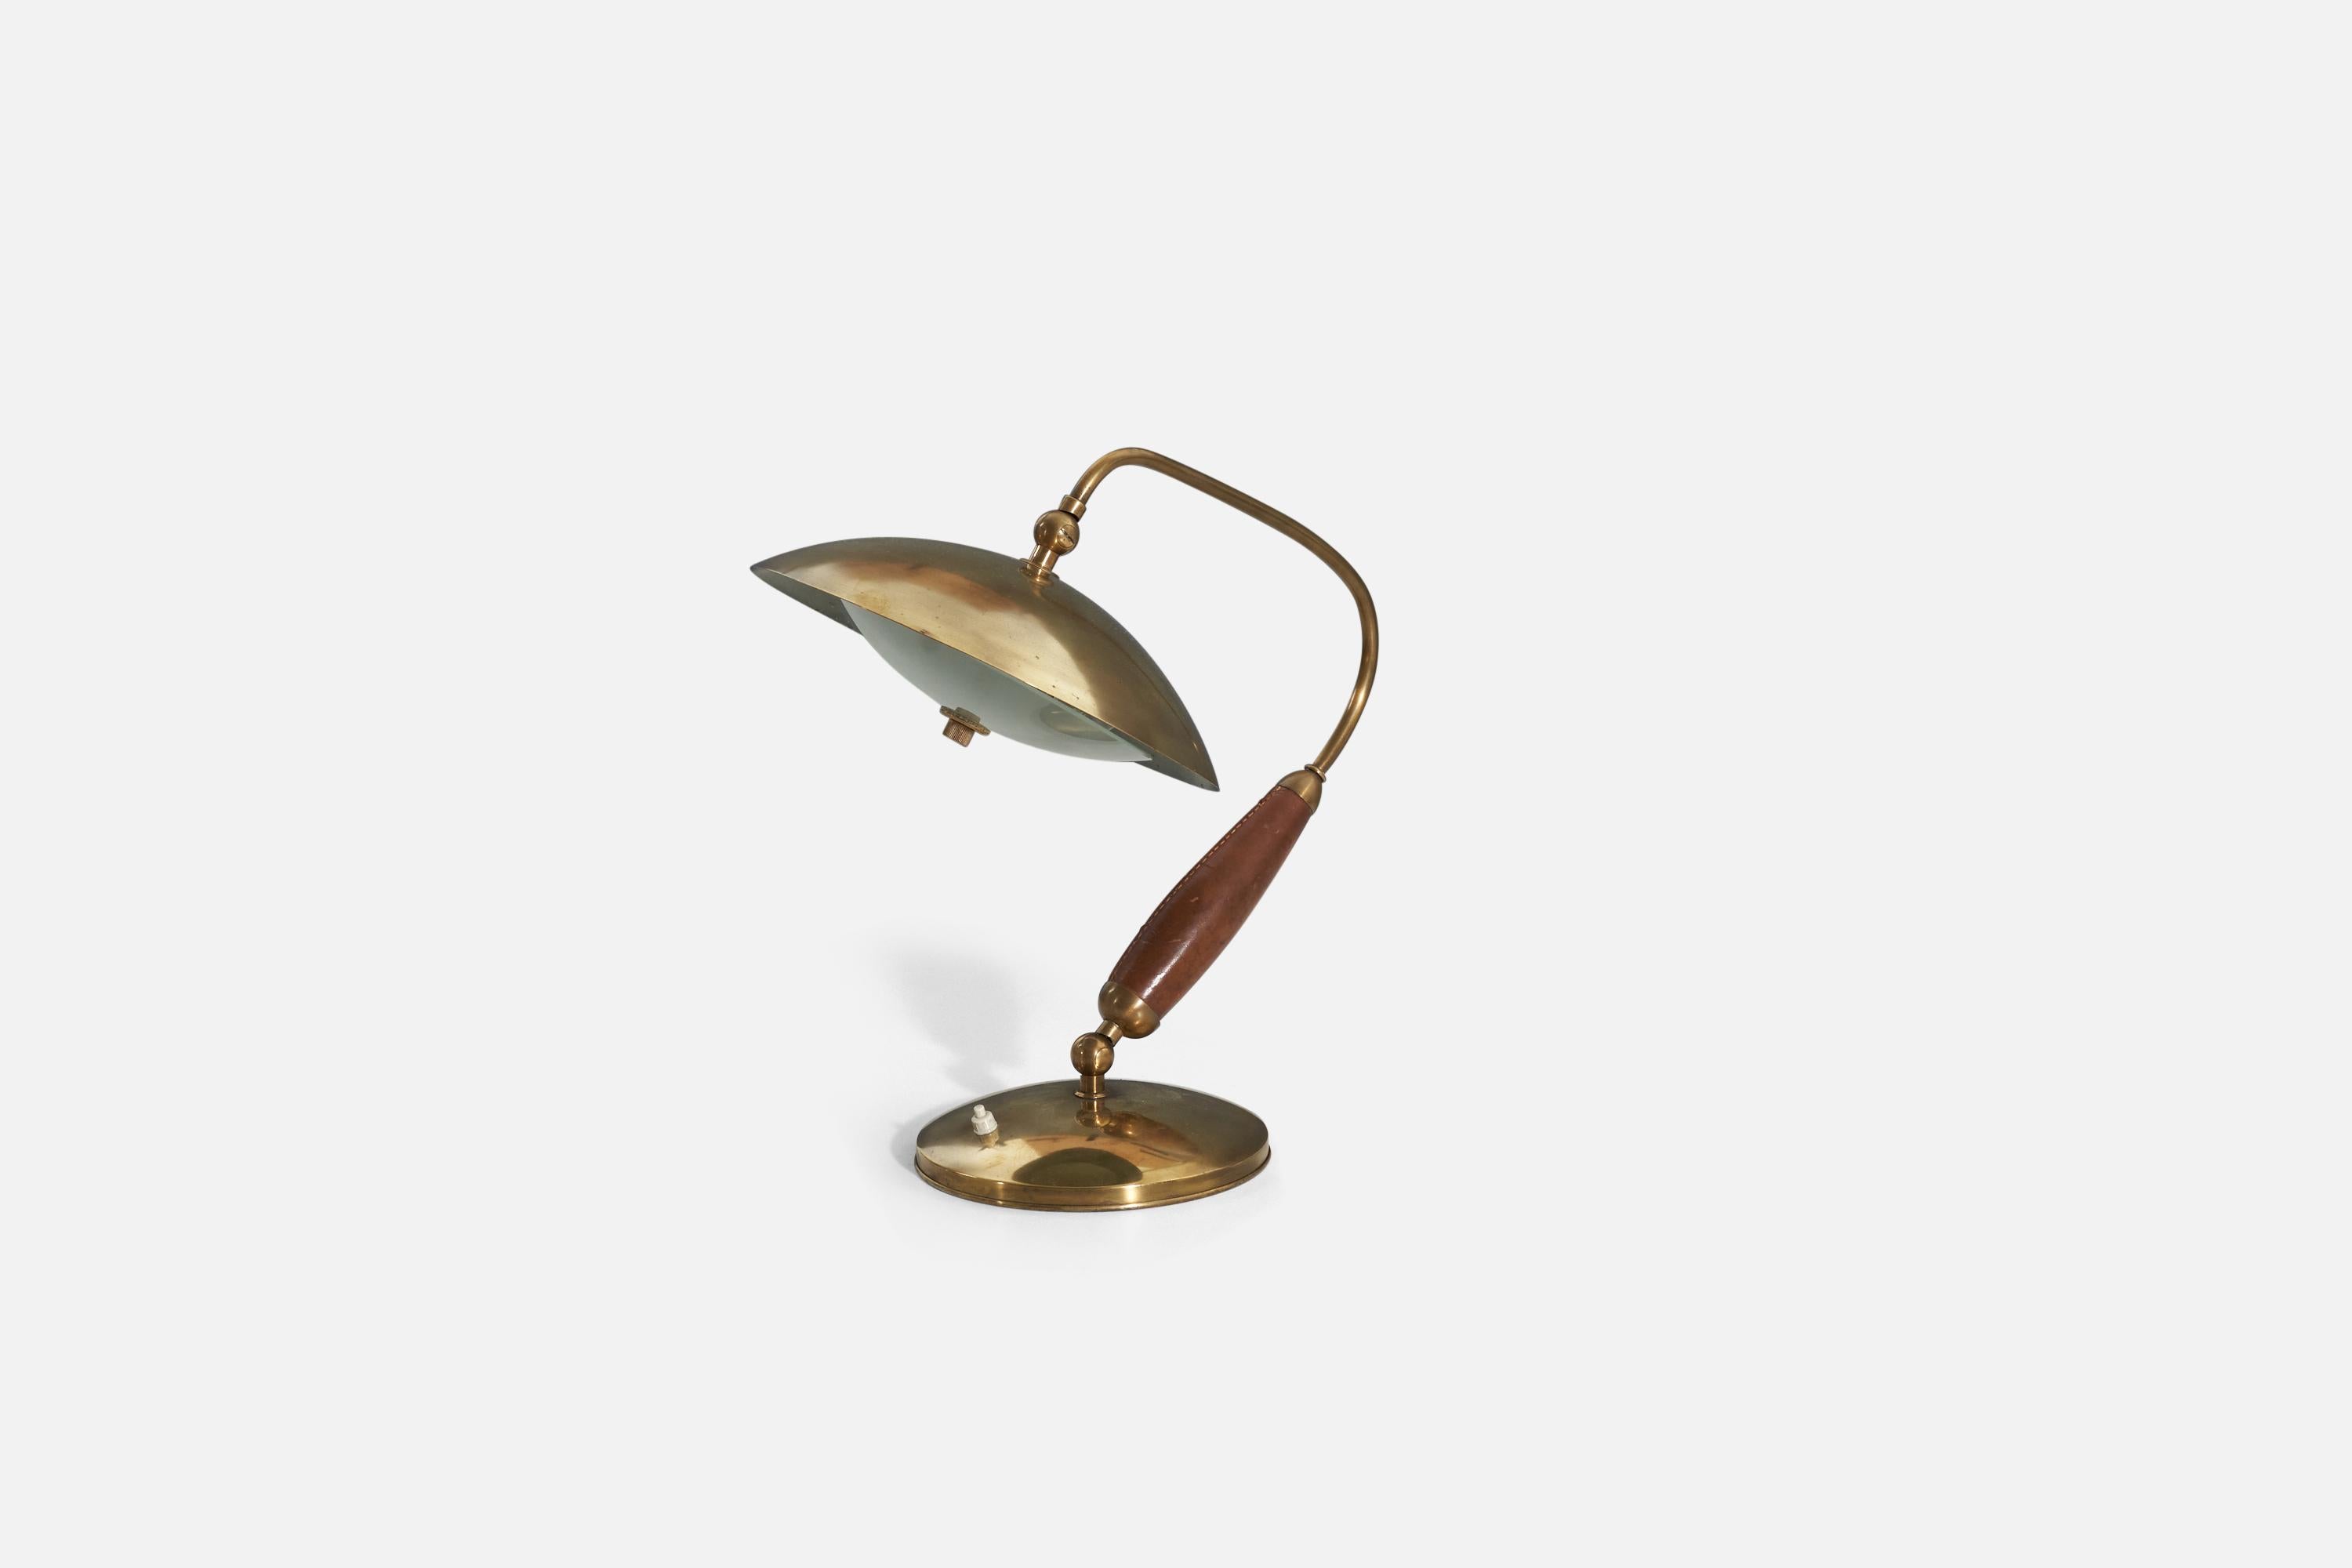 Une lampe de table réglable est attribuée à Stilnovo et a été produite en Italie dans les années 1950. Composé de laiton, de cuir et de verre dépoli.

Les dimensions indiquées sont celles de la lampe en position photographiée.